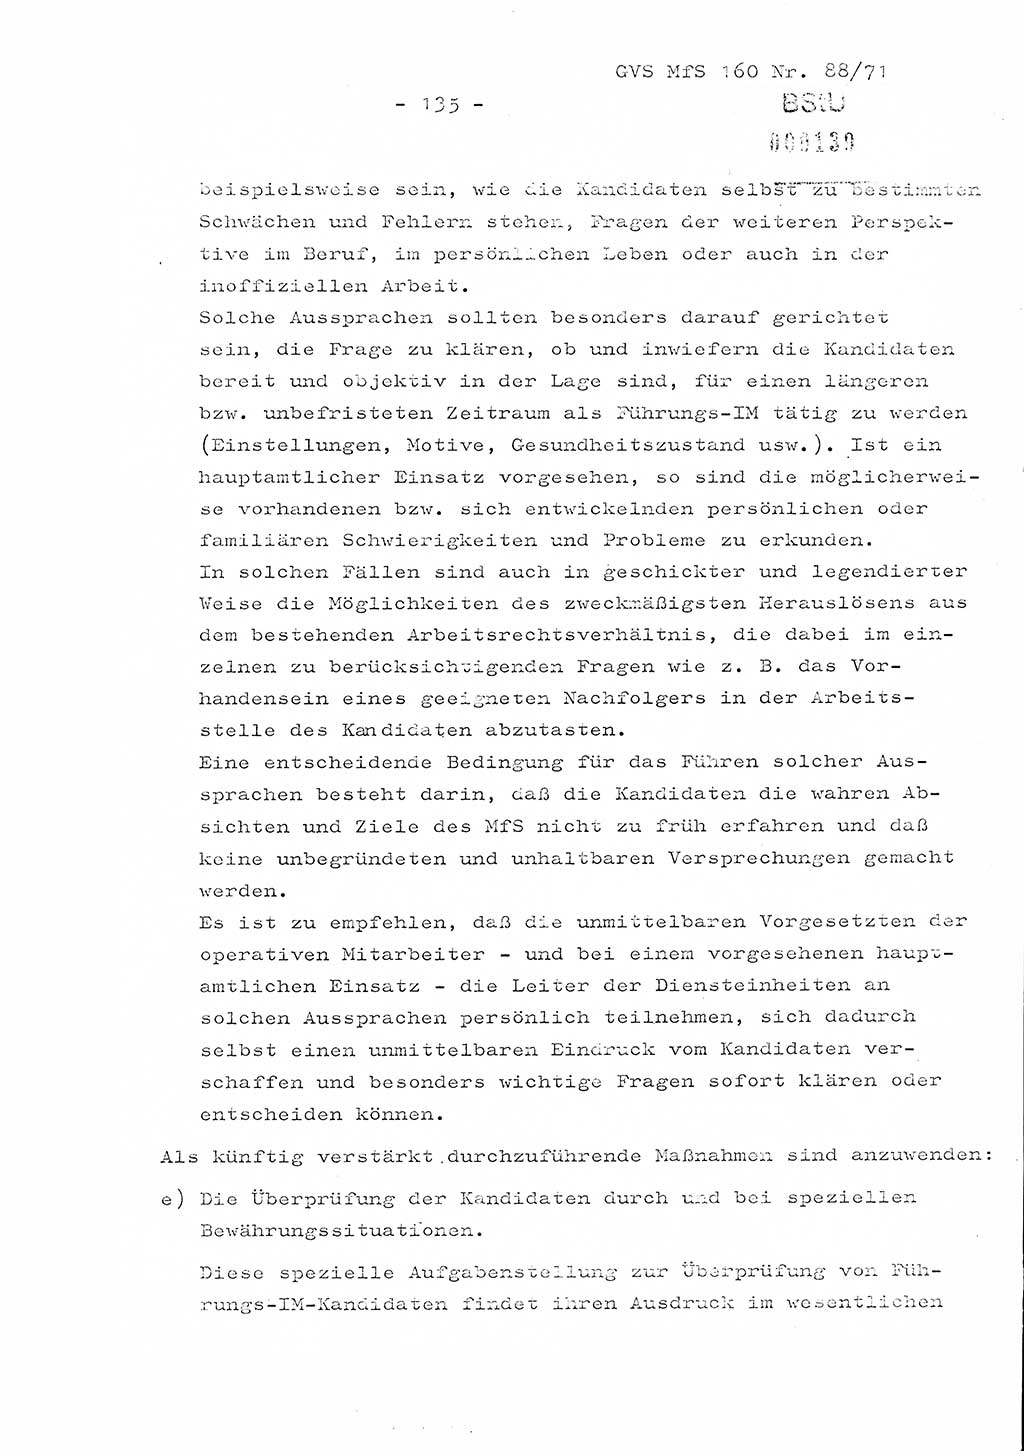 Dissertation Oberstleutnant Josef Schwarz (BV Schwerin), Major Fritz Amm (JHS), Hauptmann Peter Gräßler (JHS), Ministerium für Staatssicherheit (MfS) [Deutsche Demokratische Republik (DDR)], Juristische Hochschule (JHS), Geheime Verschlußsache (GVS) 160-88/71, Potsdam 1972, Seite 135 (Diss. MfS DDR JHS GVS 160-88/71 1972, S. 135)